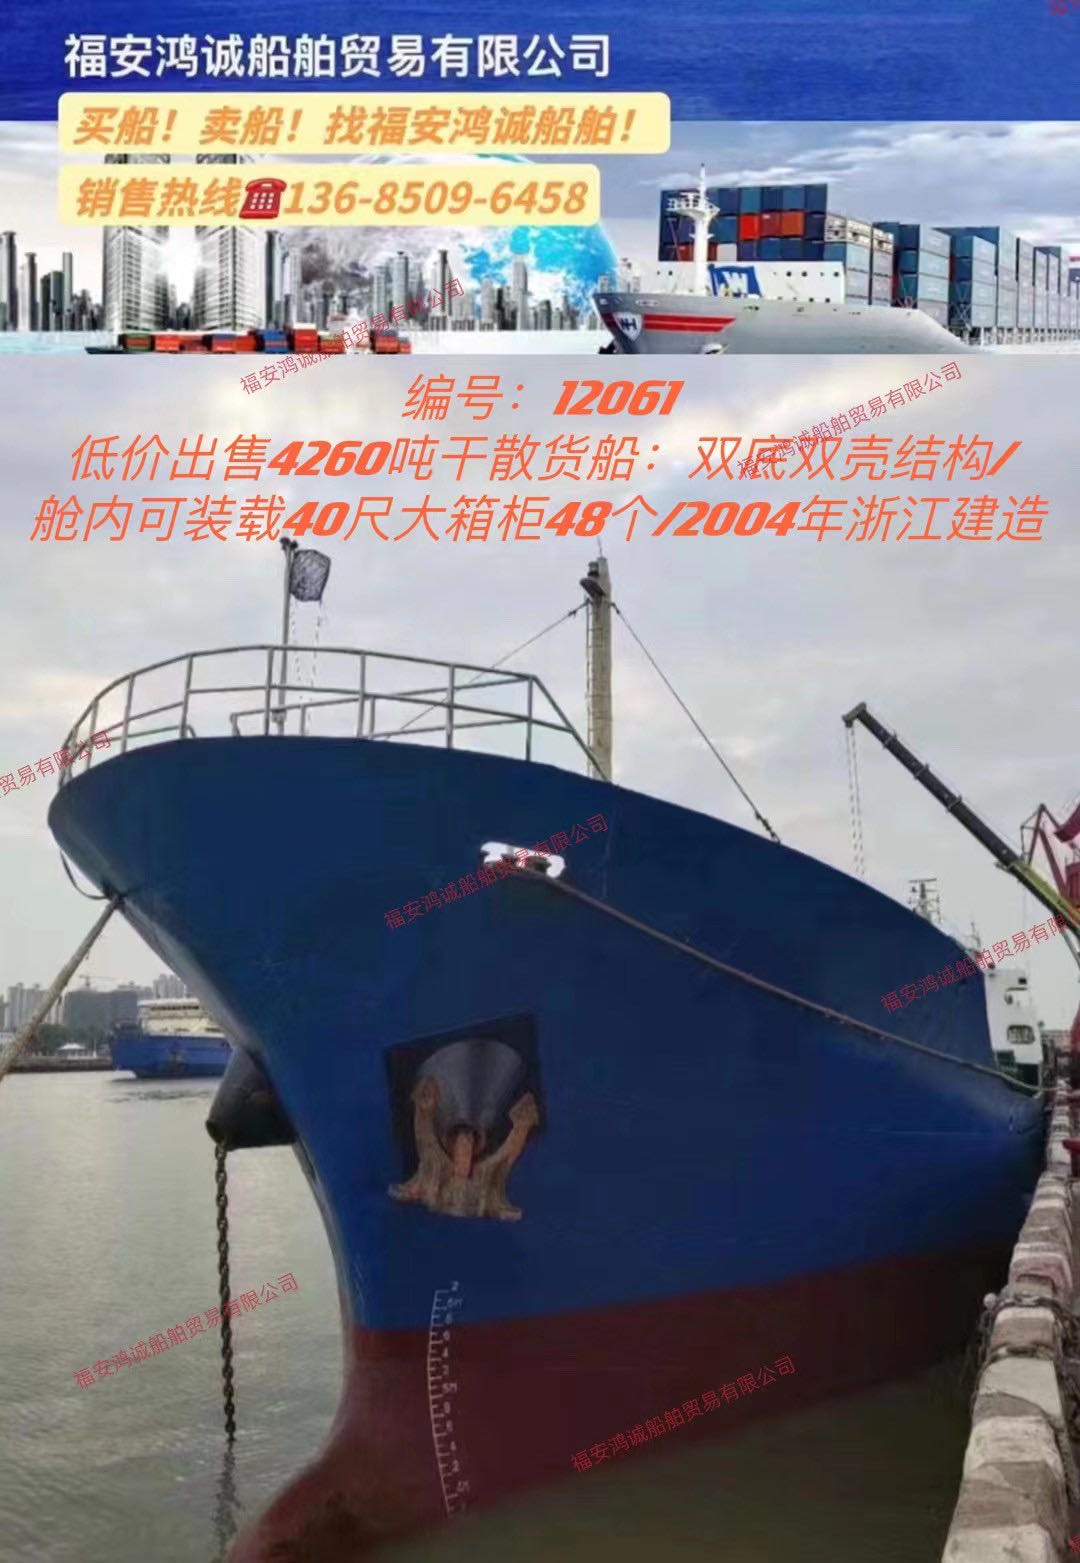 低价出售04年4260吨干货船